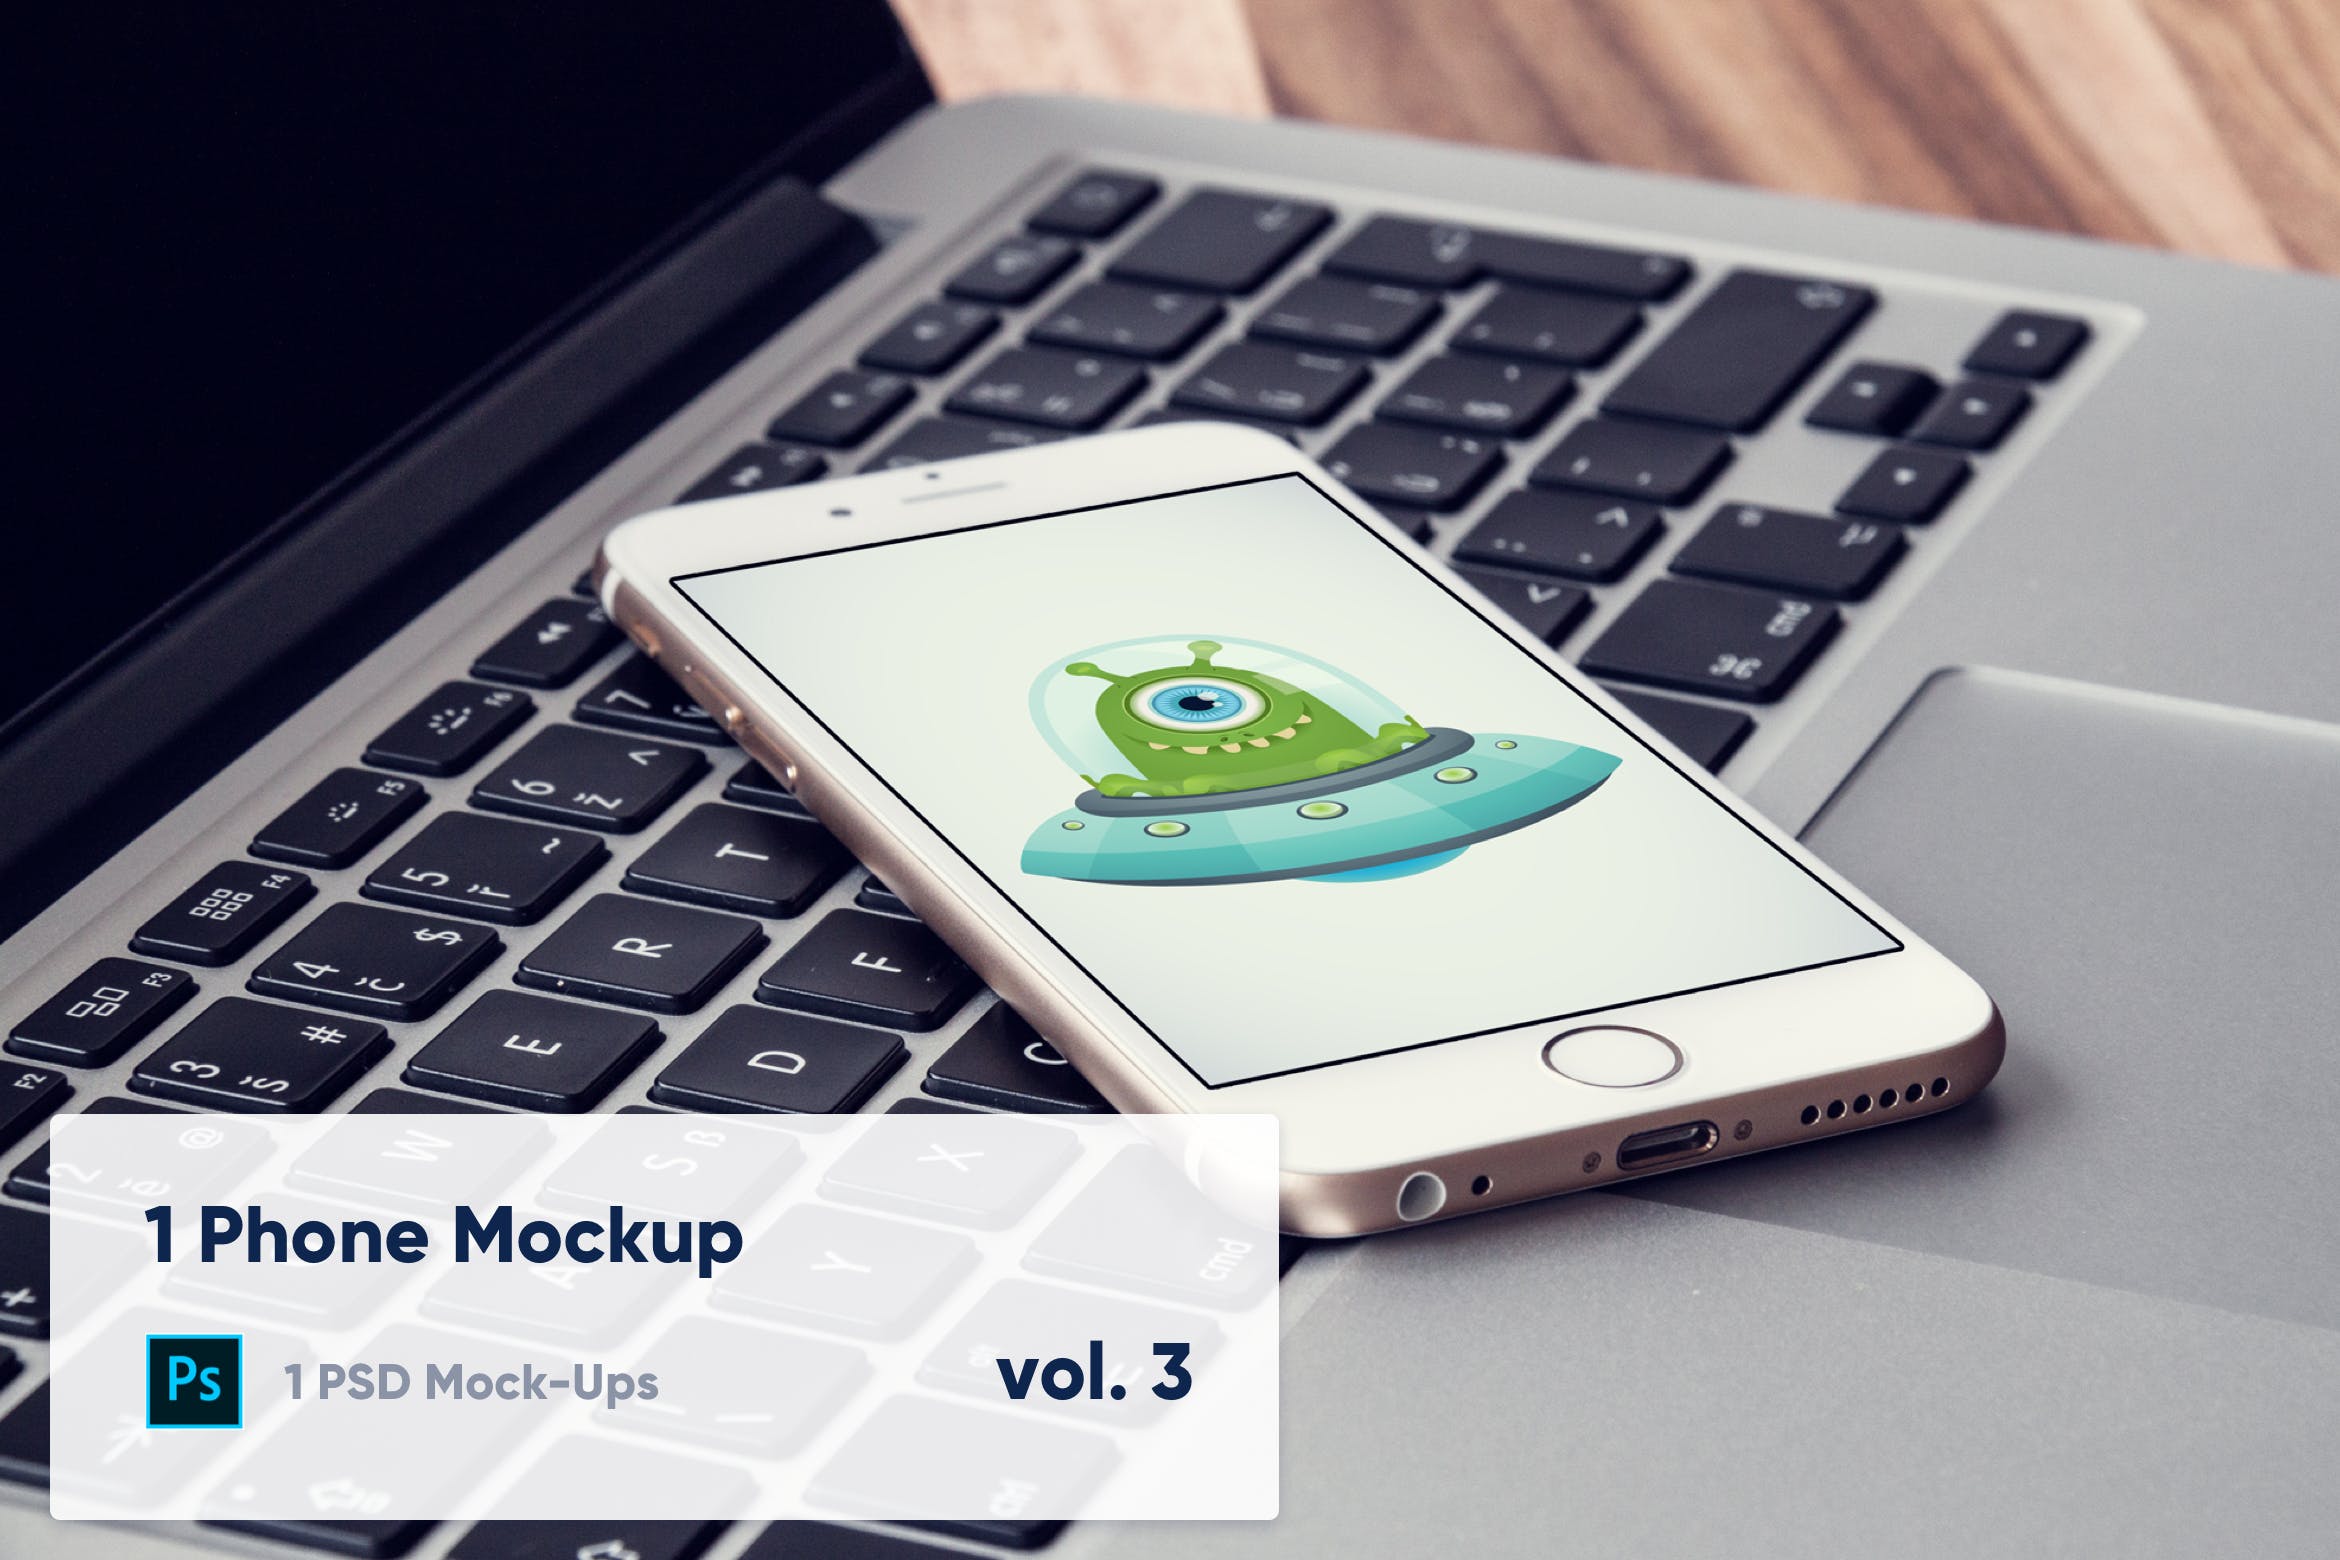 电脑办公桌上的iPhone手机屏幕演示素材库精选样机v2 1 Phone Mockup on Laptop – Vol. 2插图